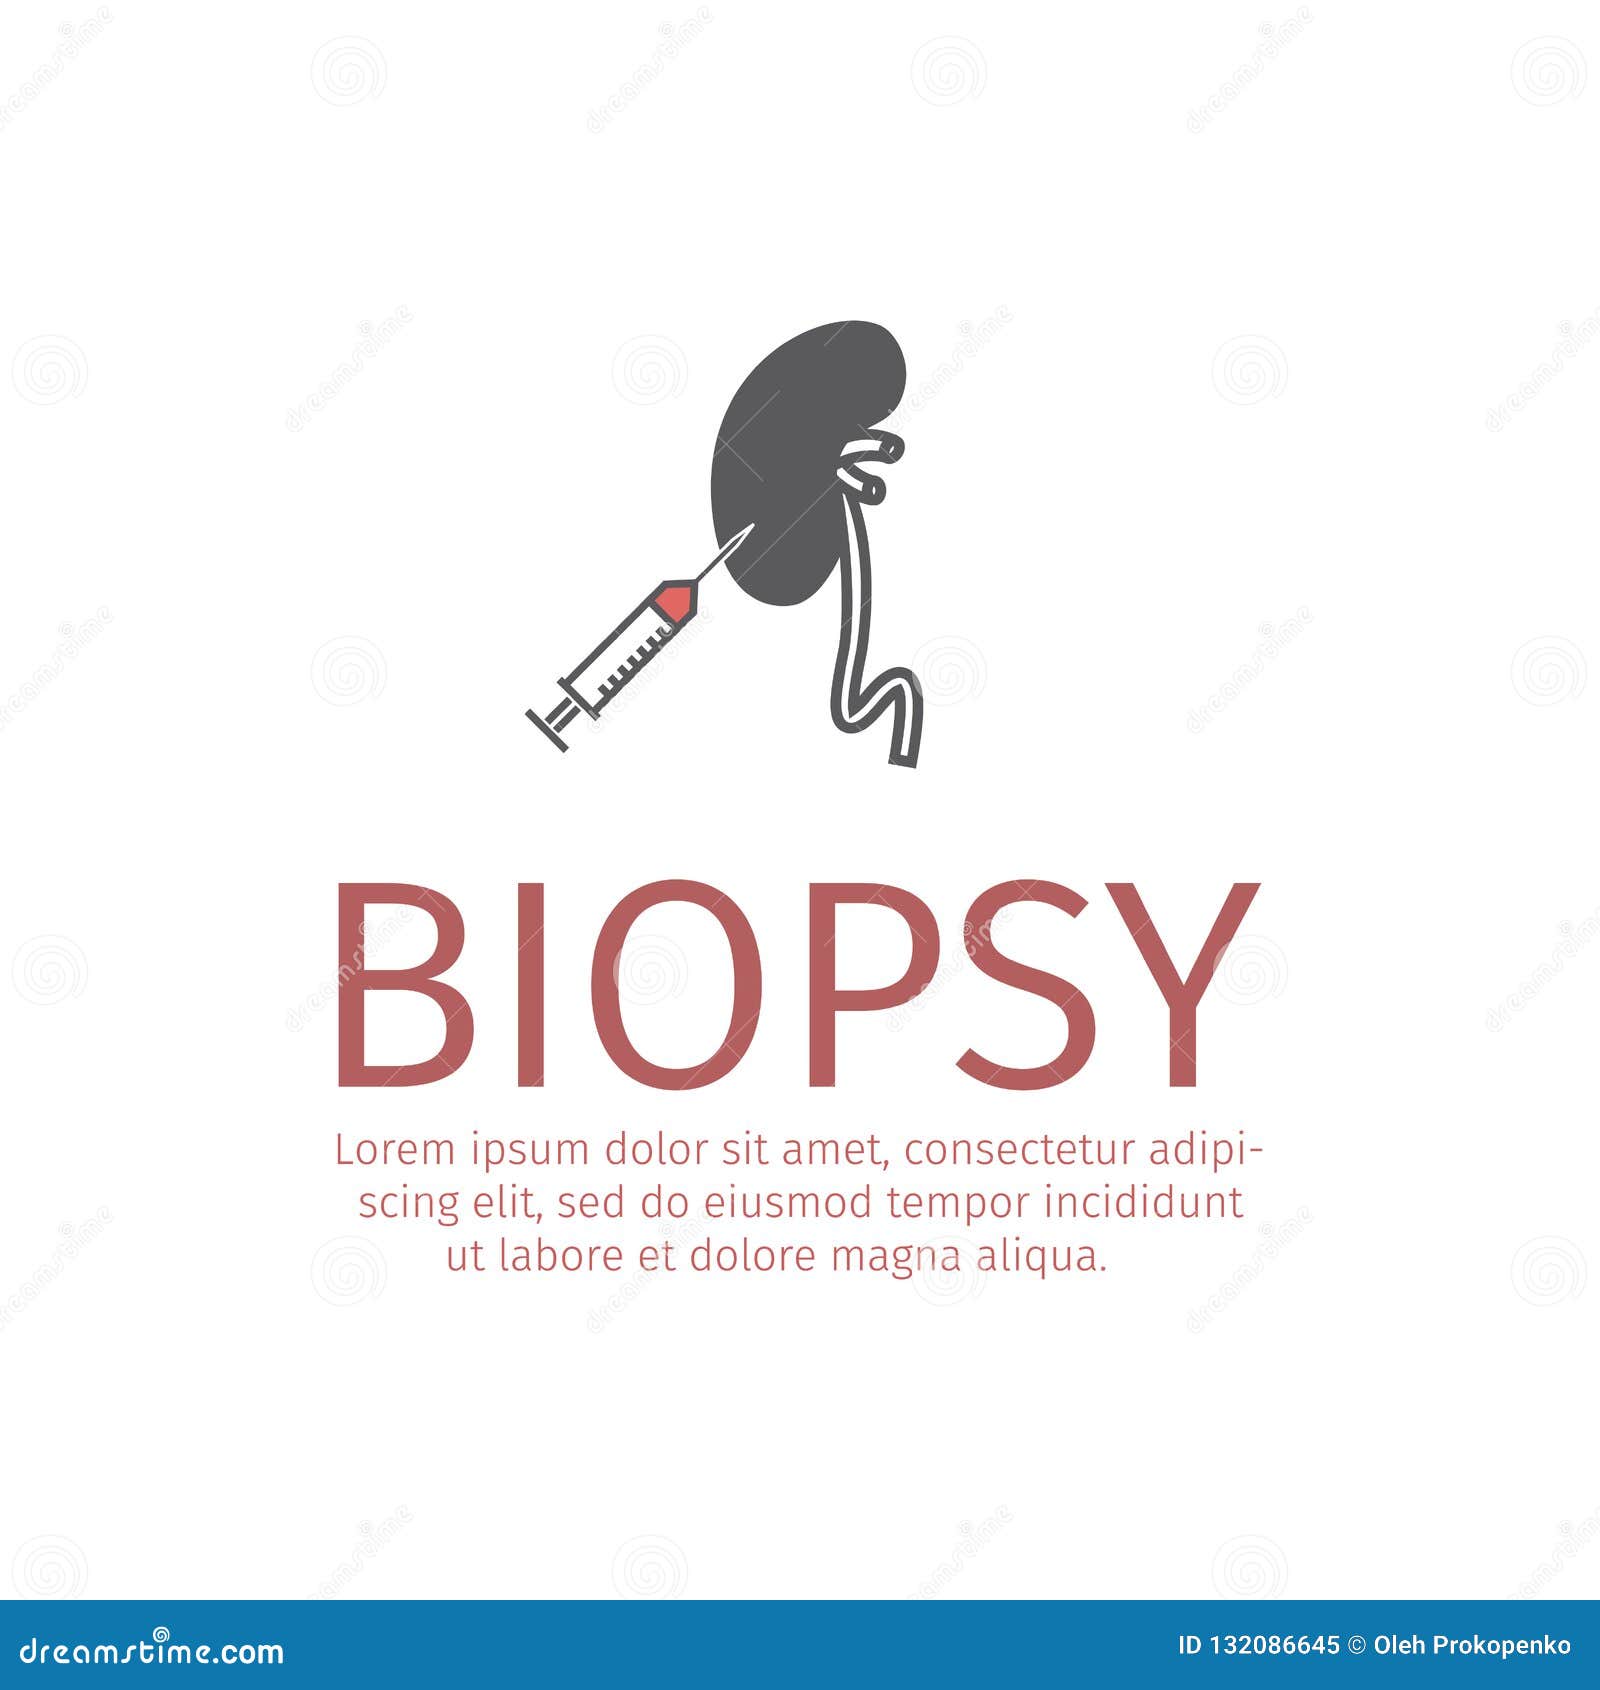 Kidneys Biopsy Stock Illustrations – 14 Kidneys Biopsy Stock Illustrations,  Vectors & Clipart - Dreamstime